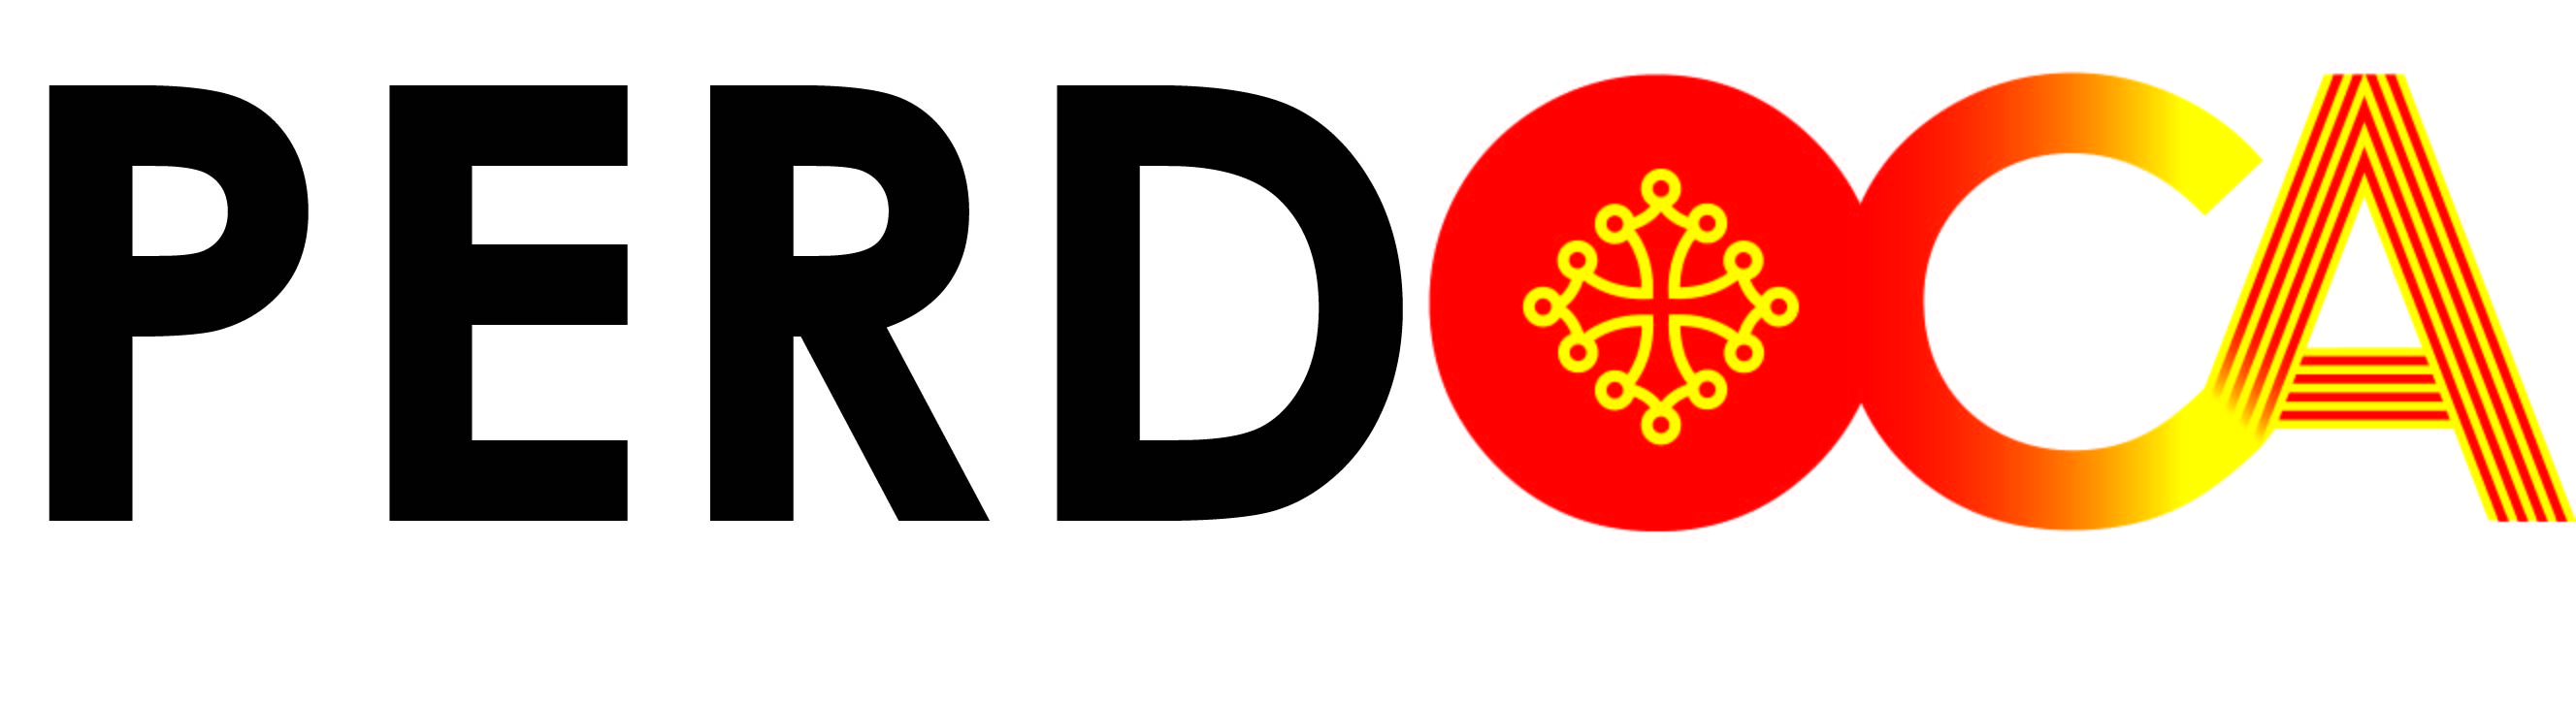 logo PERDOCA